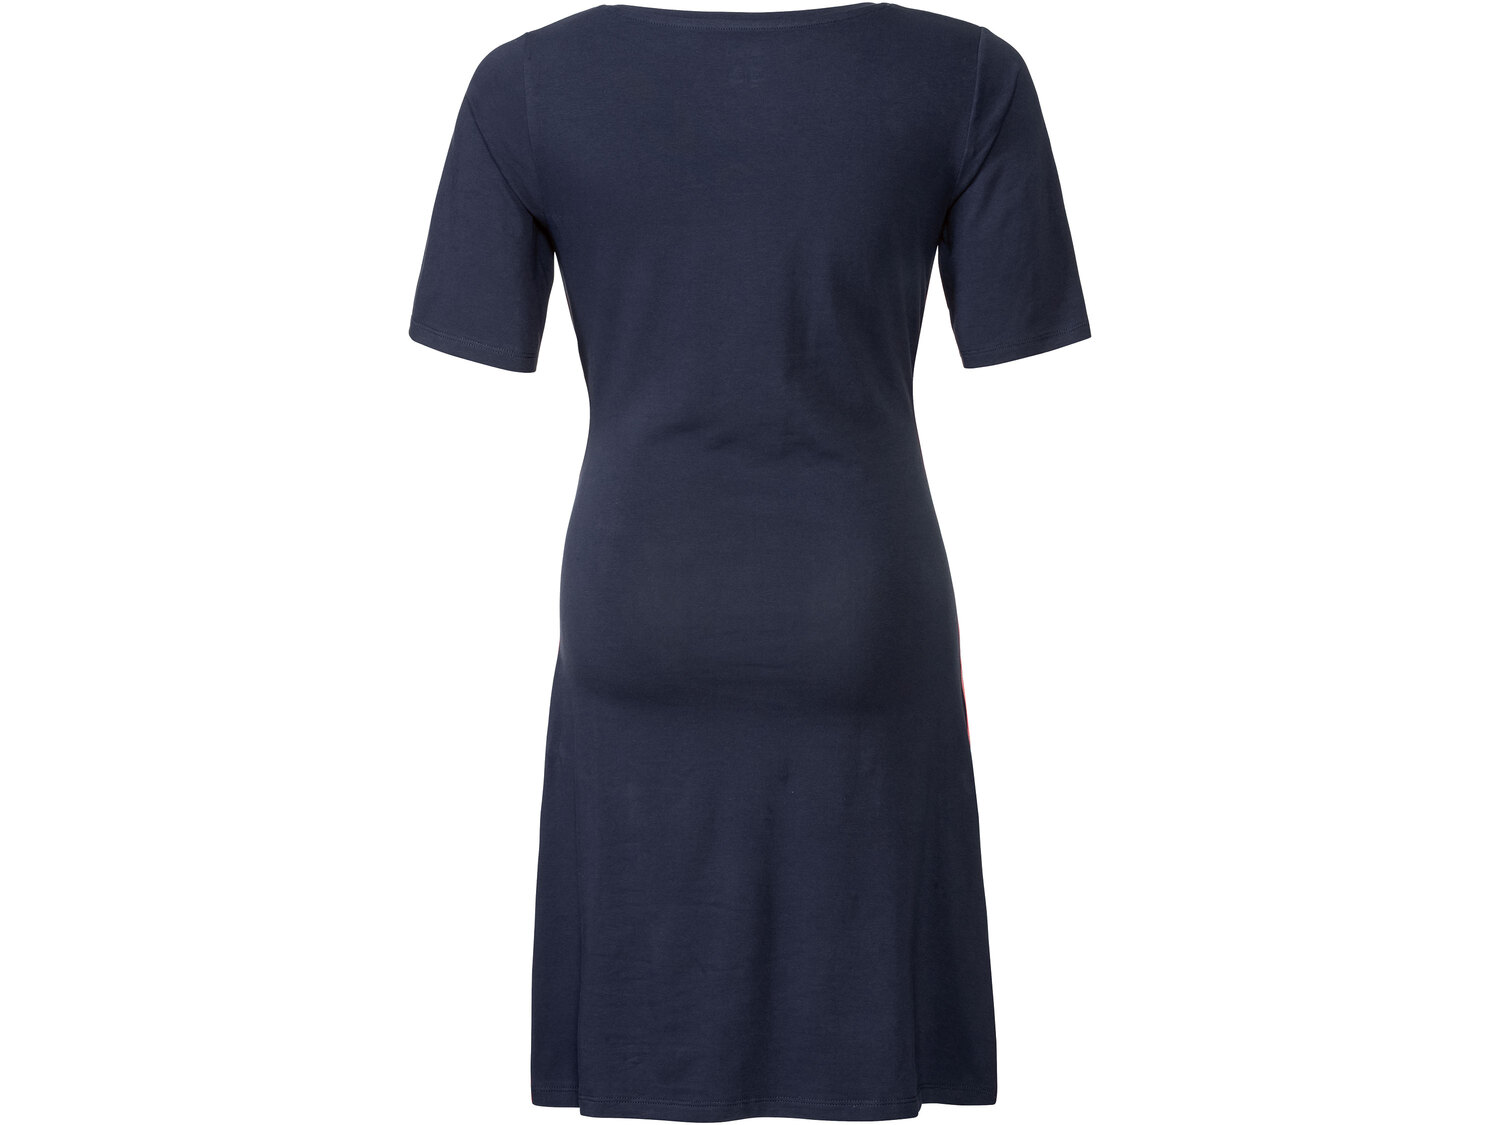 Sukienka ciążowa Esmara, cena 24,99 PLN 
- rozmiary: XS-L
- wygodny krój
- ...